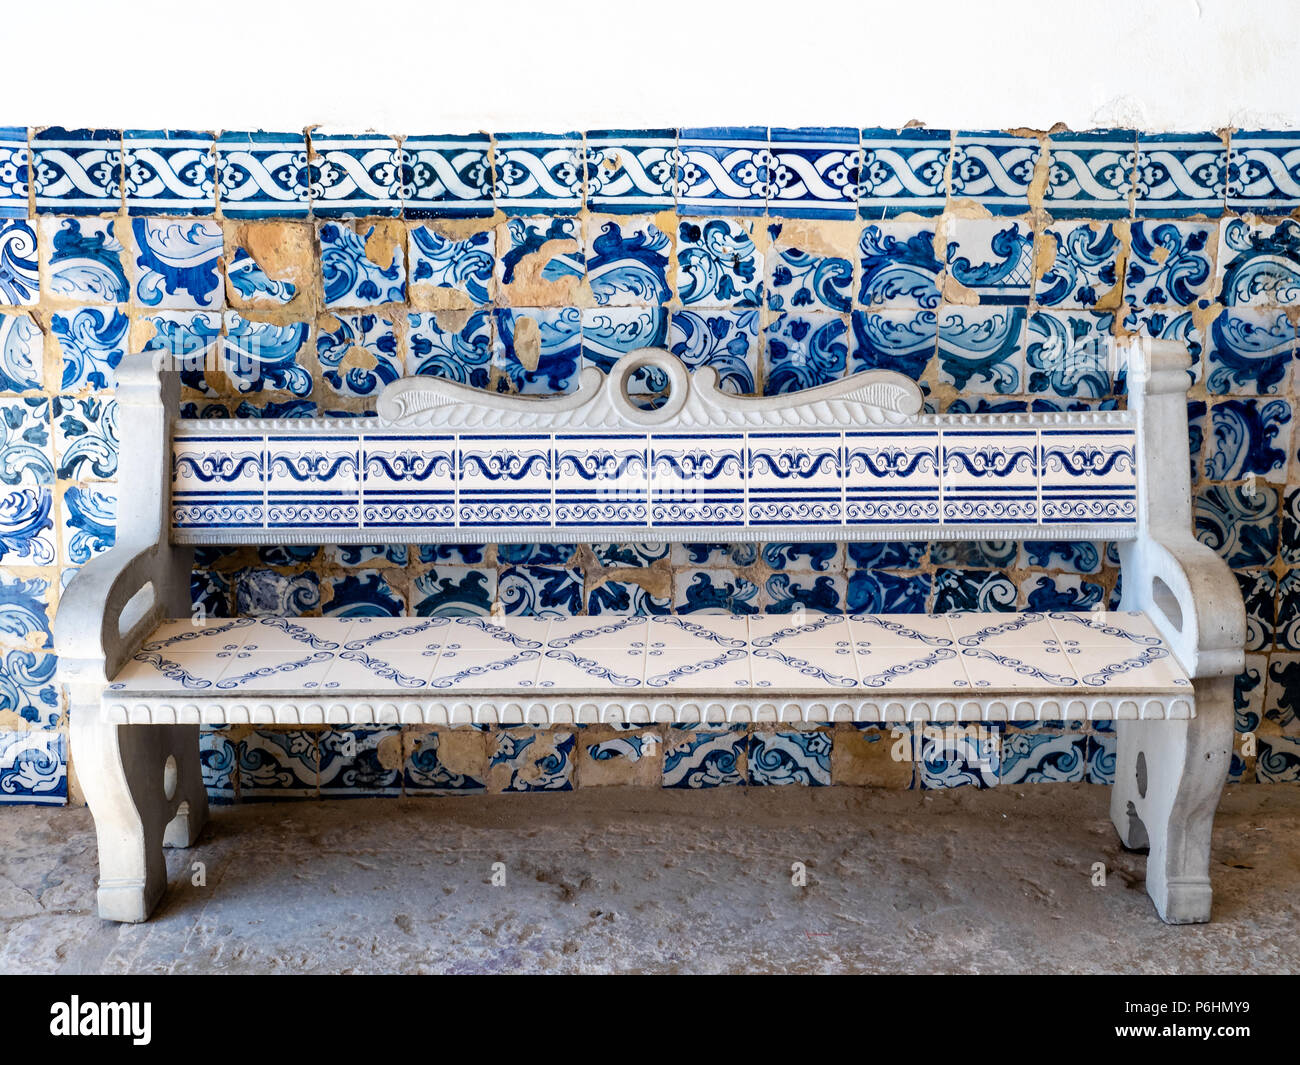 Azulejos in the chapel 'Igreja de Nossa Senhora da Rocha', Algarve, Portugal Stock Photo